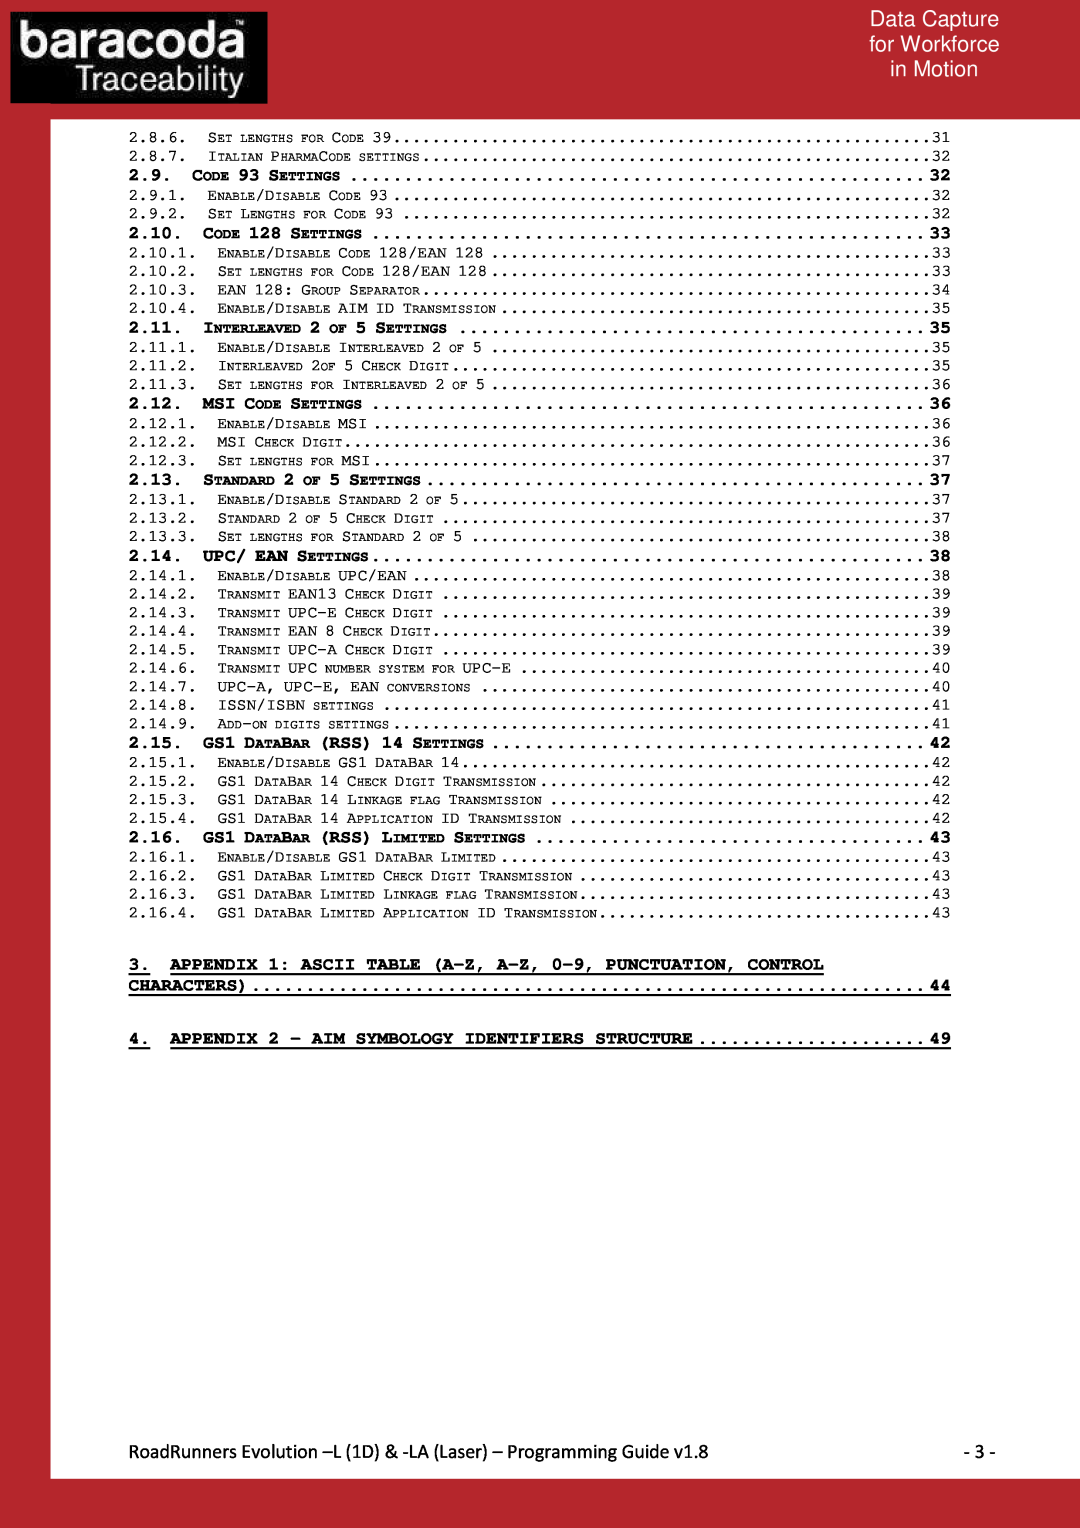 Baracoda L (1D) Data Capture, for Workforce, in Motion, RoadRunners Evolution -L 1D & -LA Laser - Programming Guide, 2.10 